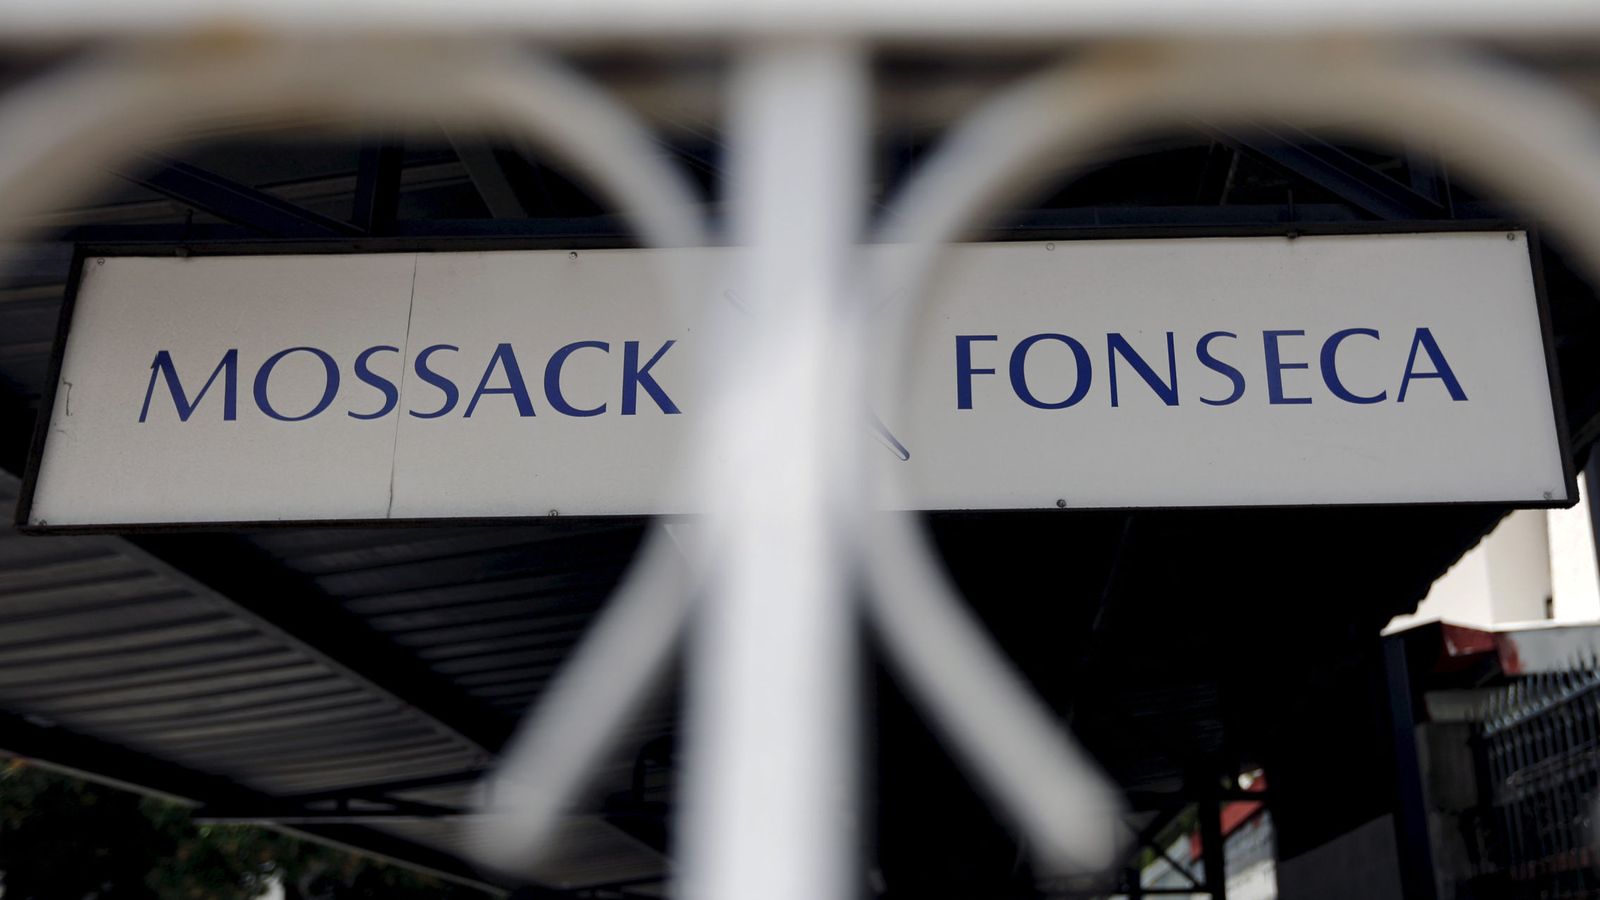 Foto: Imagen del despacho Mossack Fonseca, en Panamá, origen de la filtración. (Reuters)